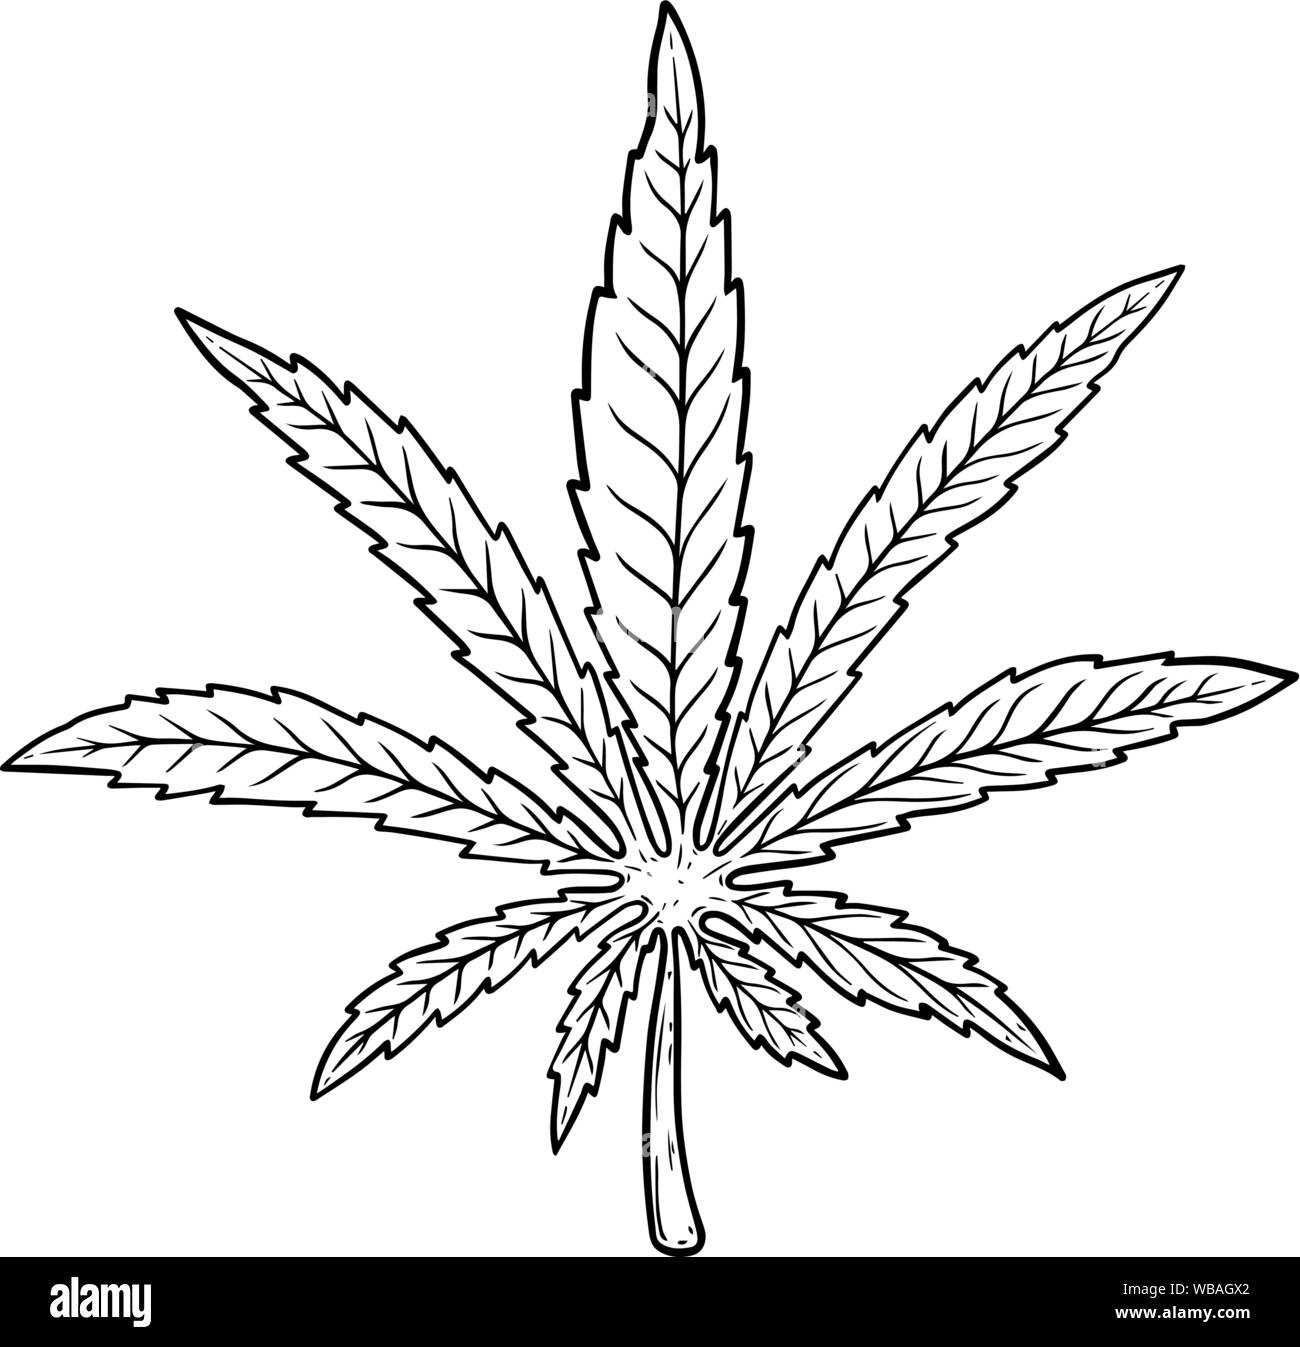 Illustration de feuilles de cannabis isolé sur fond blanc. L'élément de conception pour l'affiche, bannière, t shirt, de l'emblème. Vector illustration Illustration de Vecteur